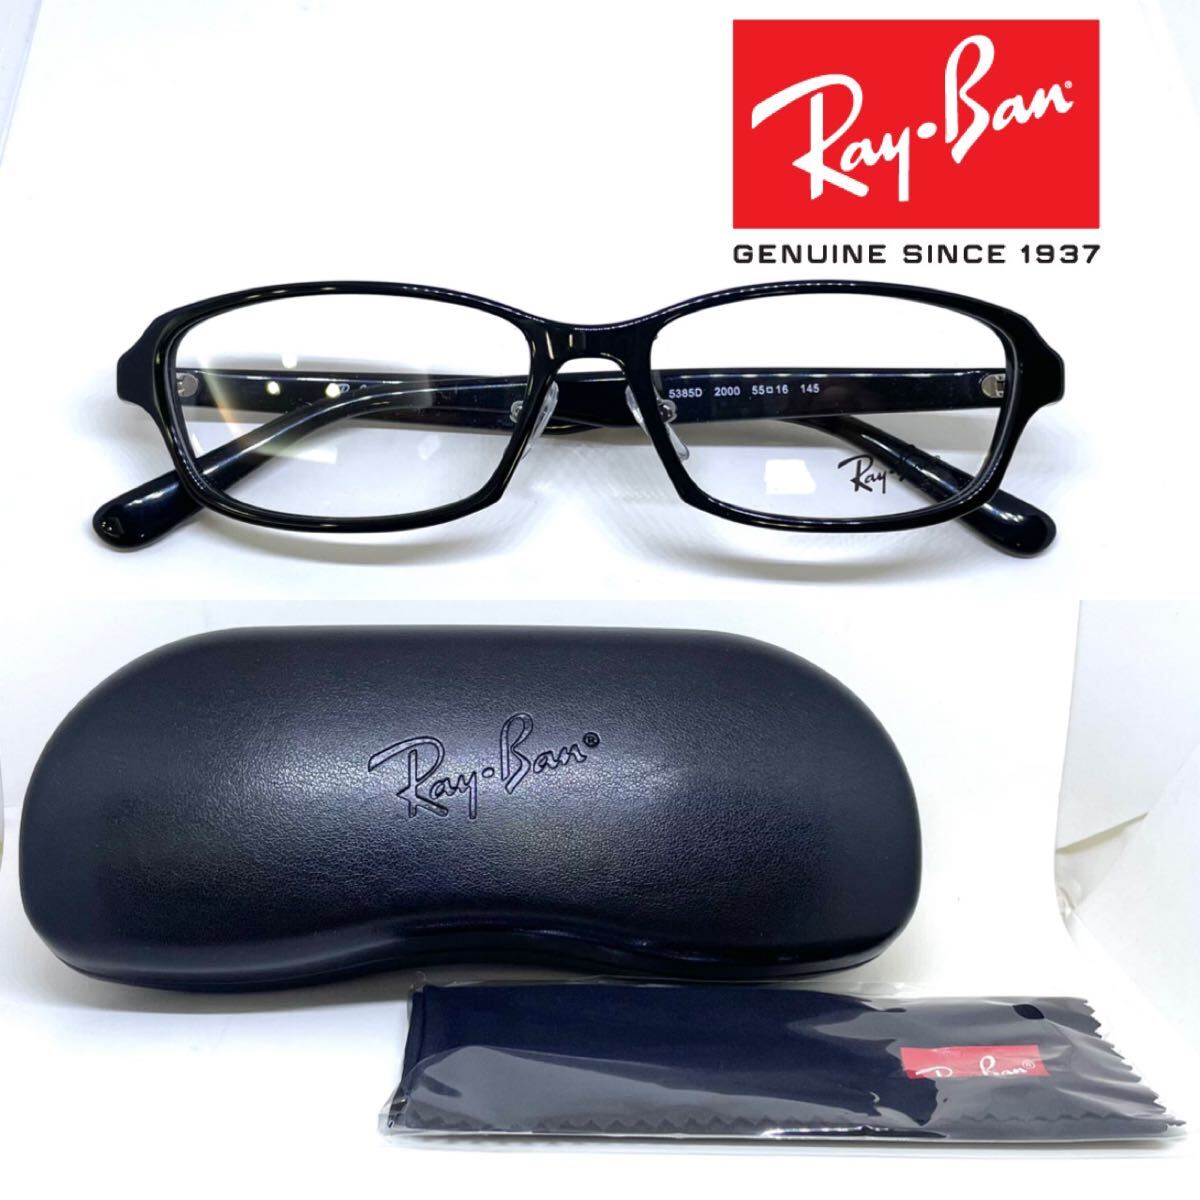 新品 送料無料 Ray Ban レイバン メガネ フレーム RB5385D RX5385D 2000 ブラック 眼鏡 Ray-Ban メガネフレーム めがね _画像3